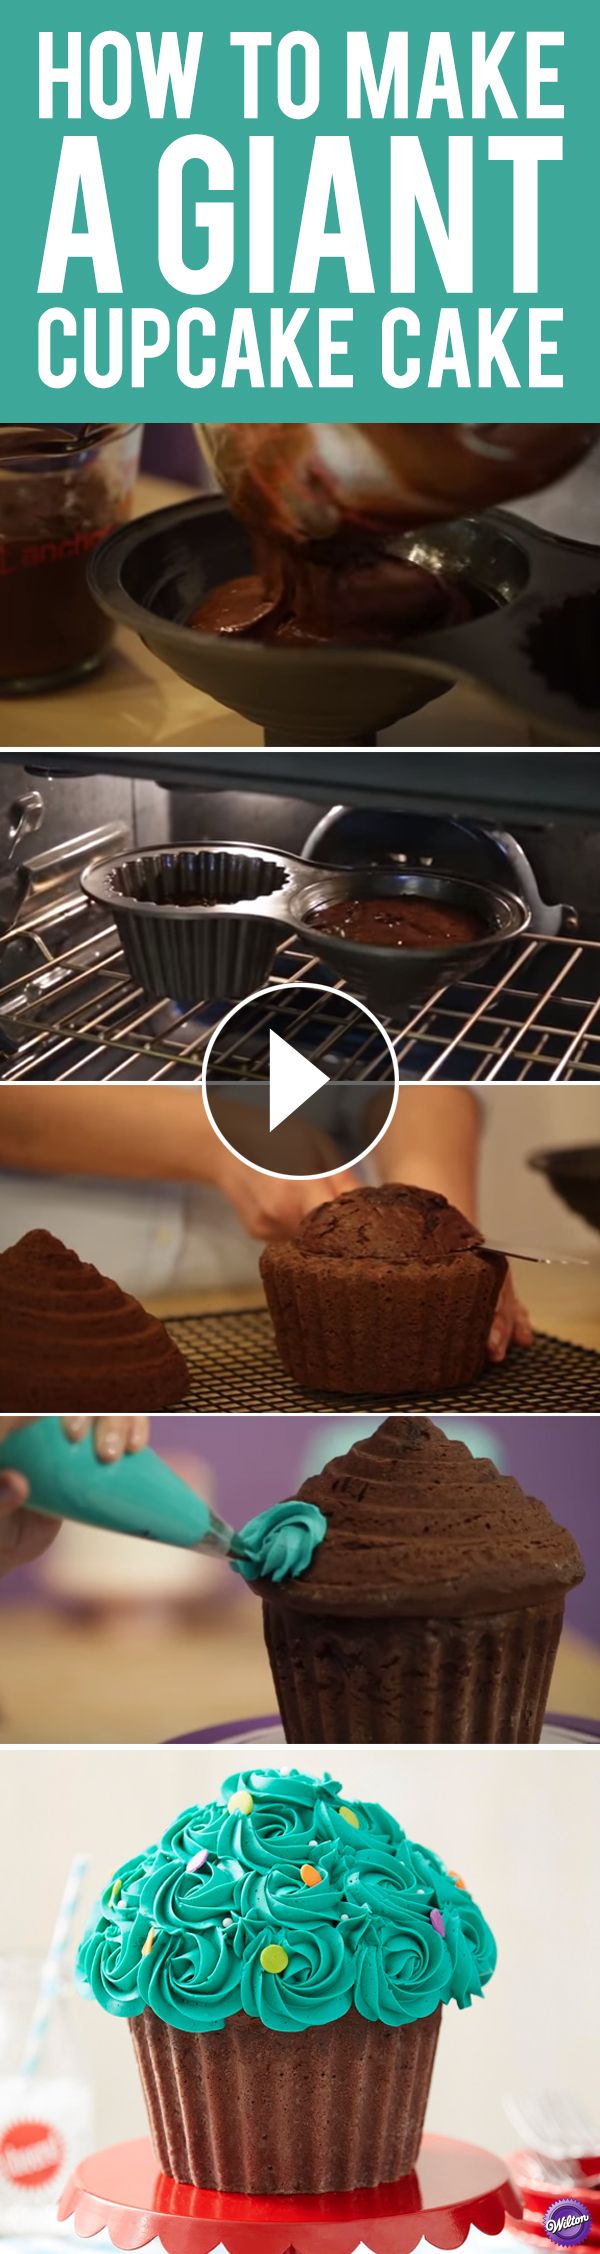 Wilton Cupcake Cake Pan Baking Instructions